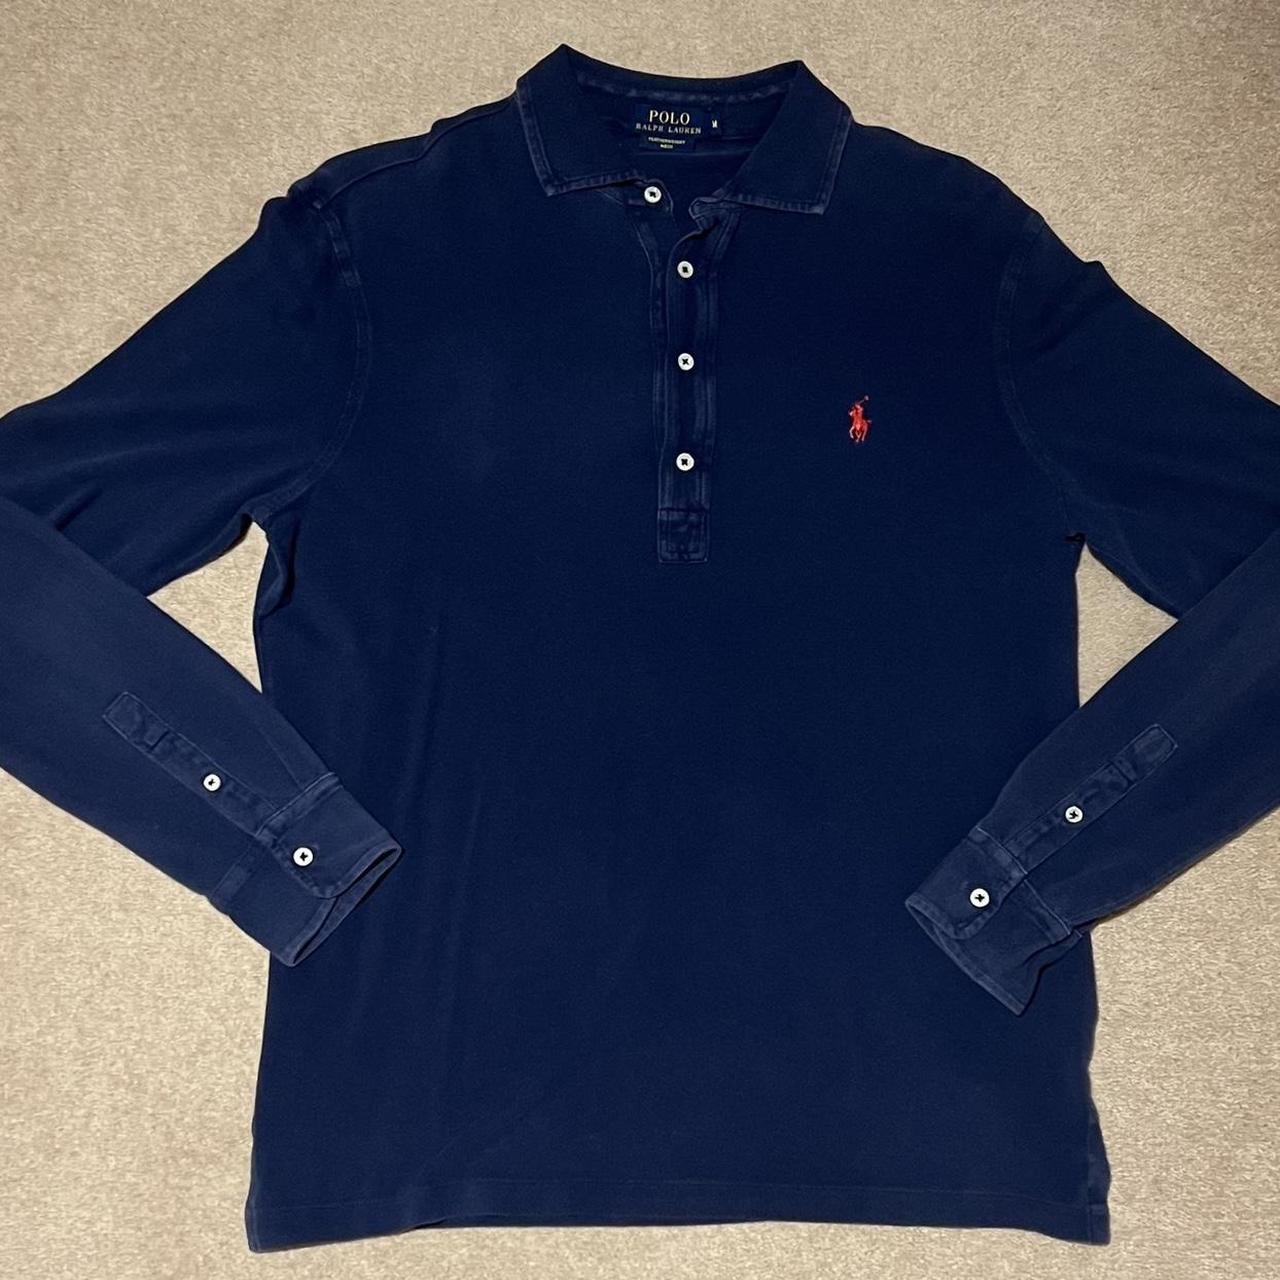 Ralph Lauren Long Sleeve Navy Polo Shirt Medium,... - Depop